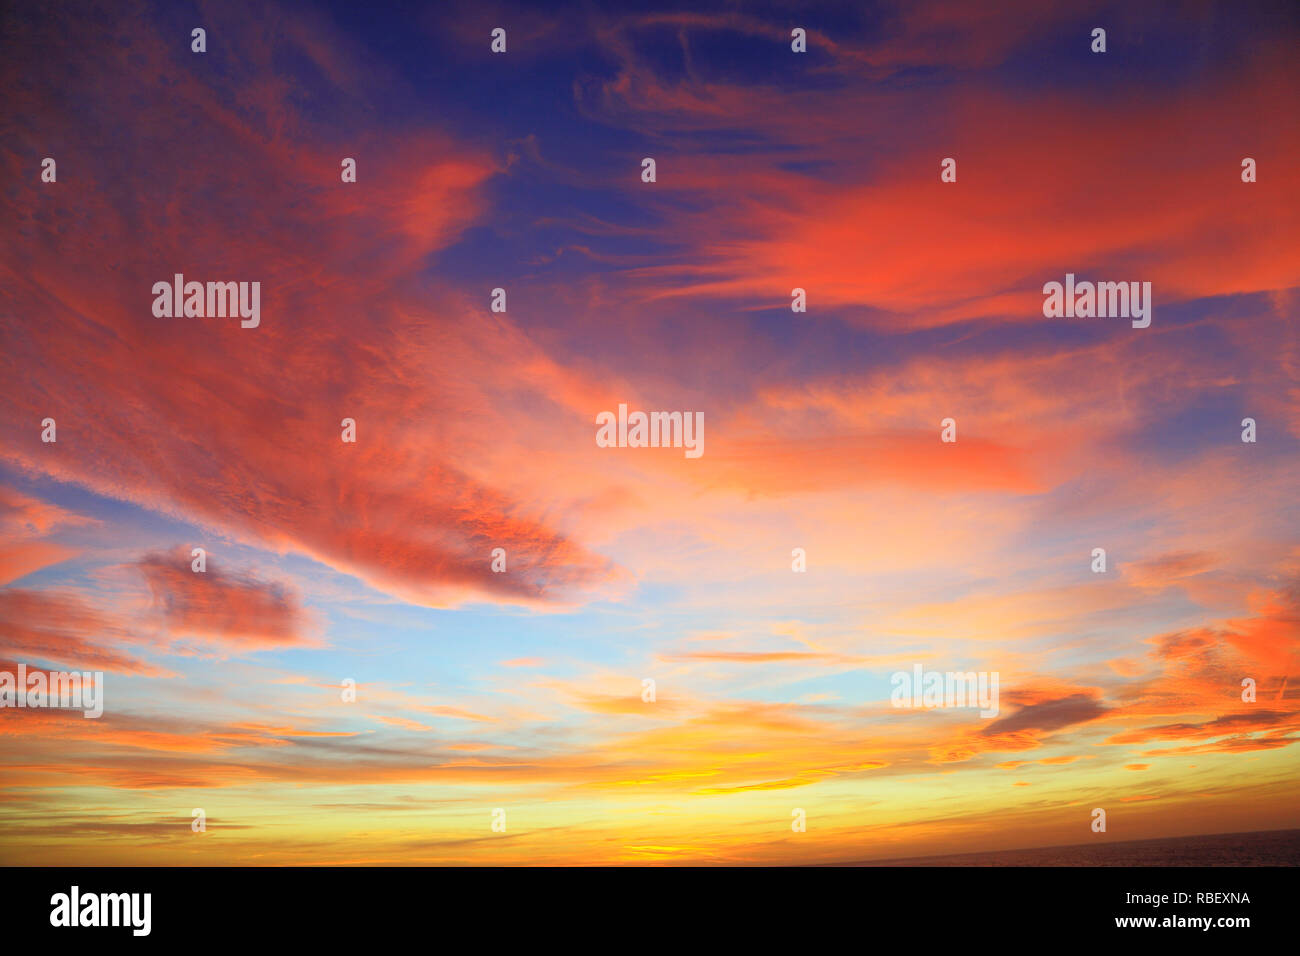 Impostazione Sun, Tramonto, rosso, rosa, arancione, giallo, nuvole, cielo blu, cieli, drammatico, colore, colorato Foto Stock